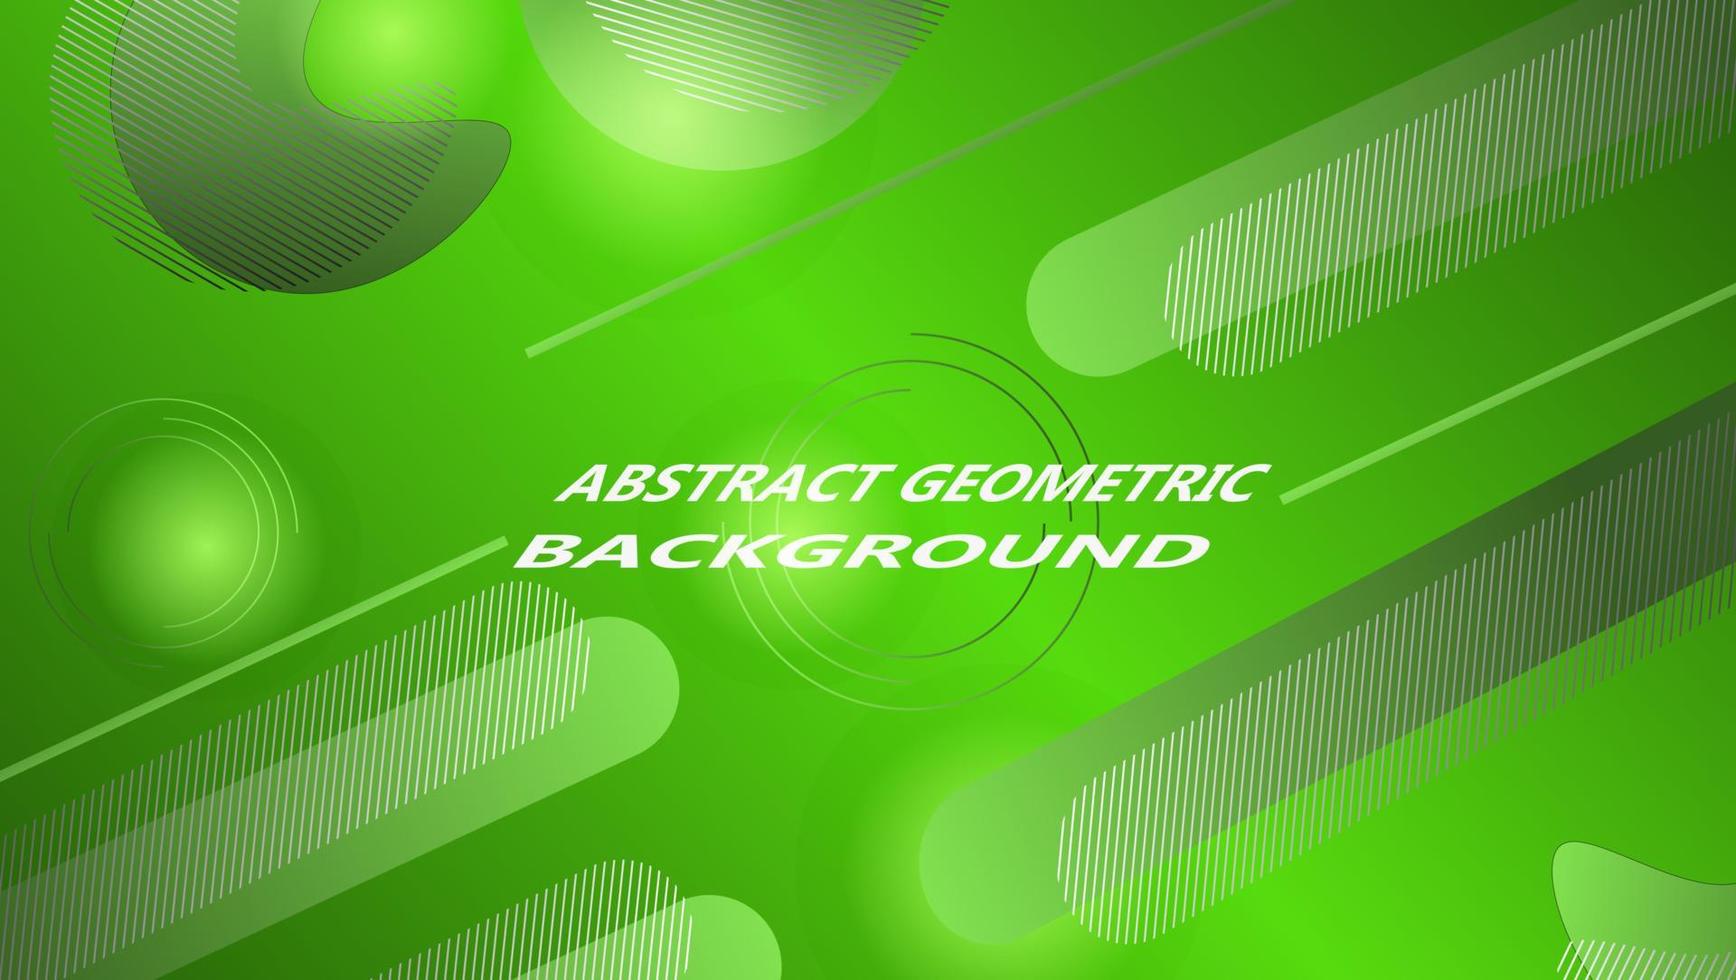 abstrakt geometrisk bakgrund med grön bakgrund och lutning grön geometrisk motiv för bakgrund design. flygblad, baner, omslag, affisch eller webb design mall. vektor